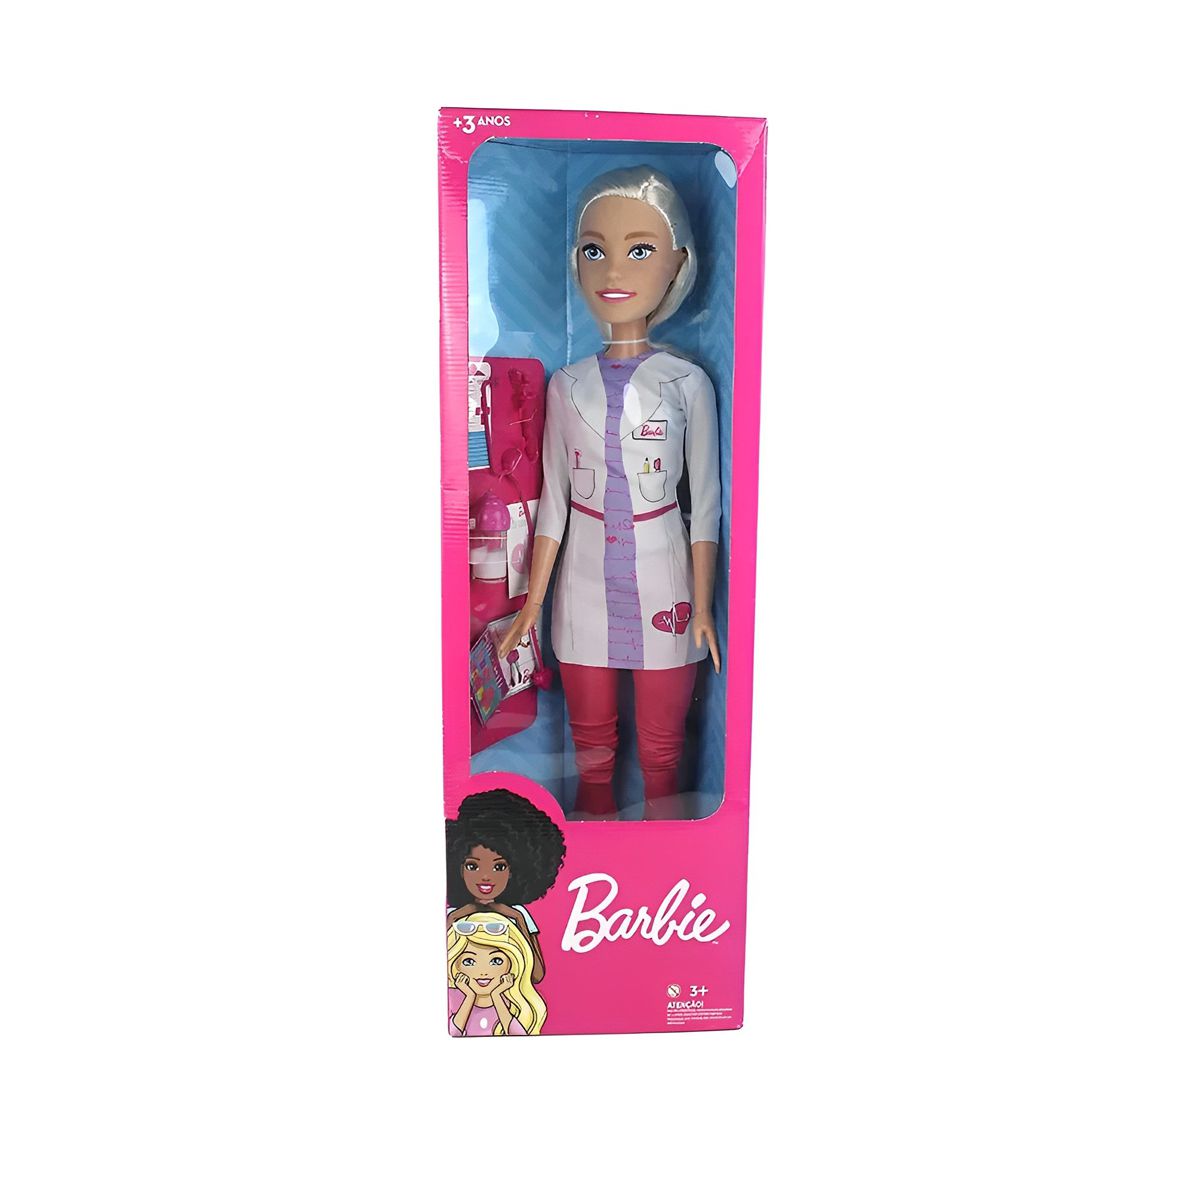 Barbie & Cia Roupinhas e Acessórios - Boneca grande. Mede 57cm